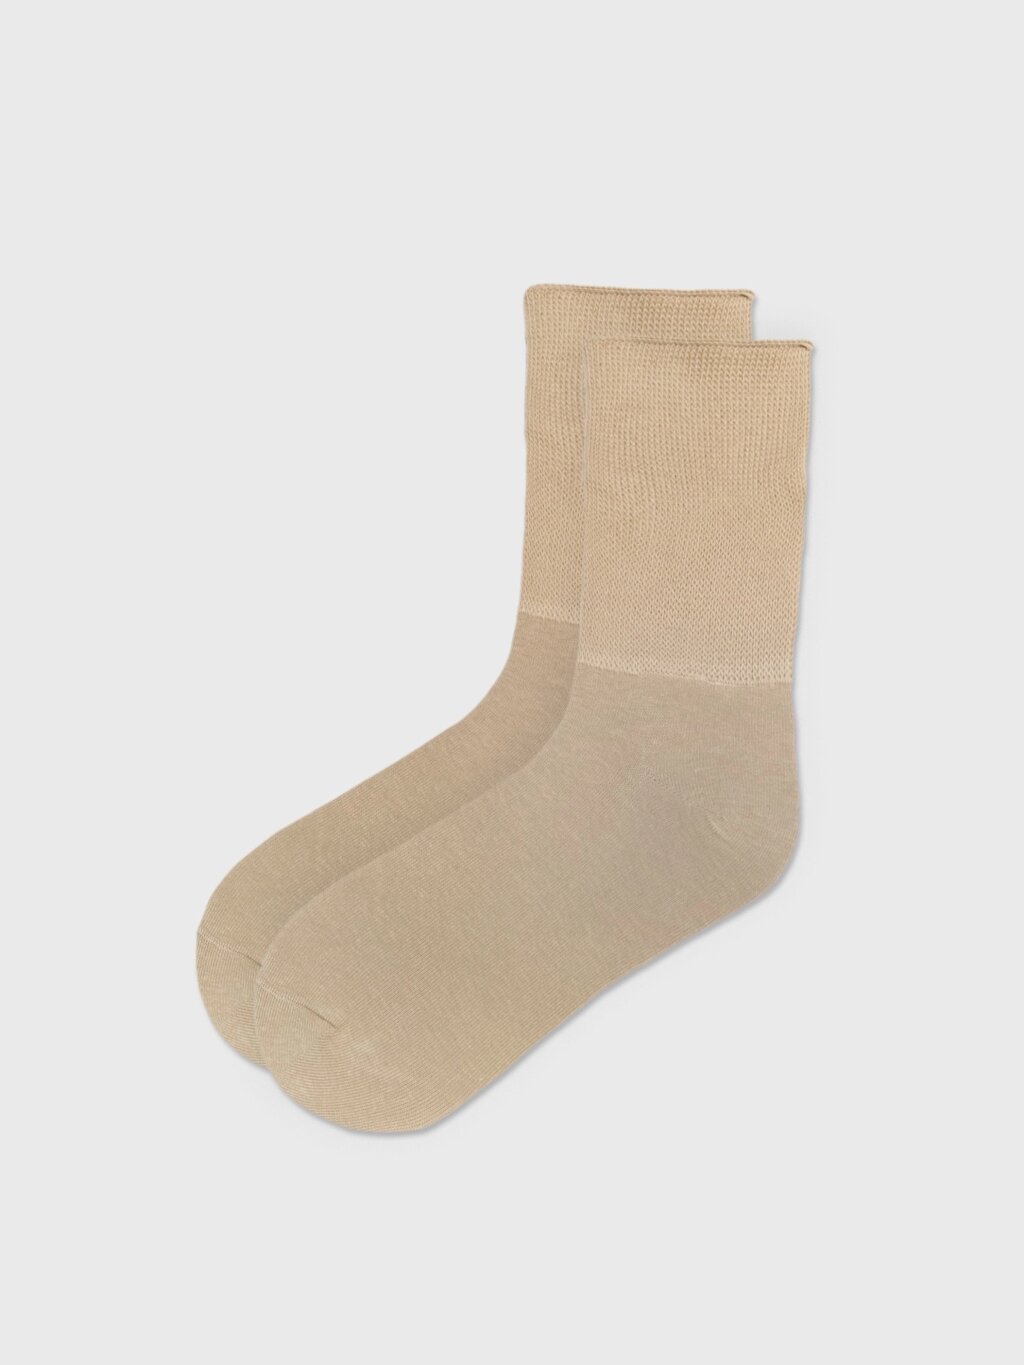 Удлинённые носки бежевые (38-40) от компании Admi - фото 1